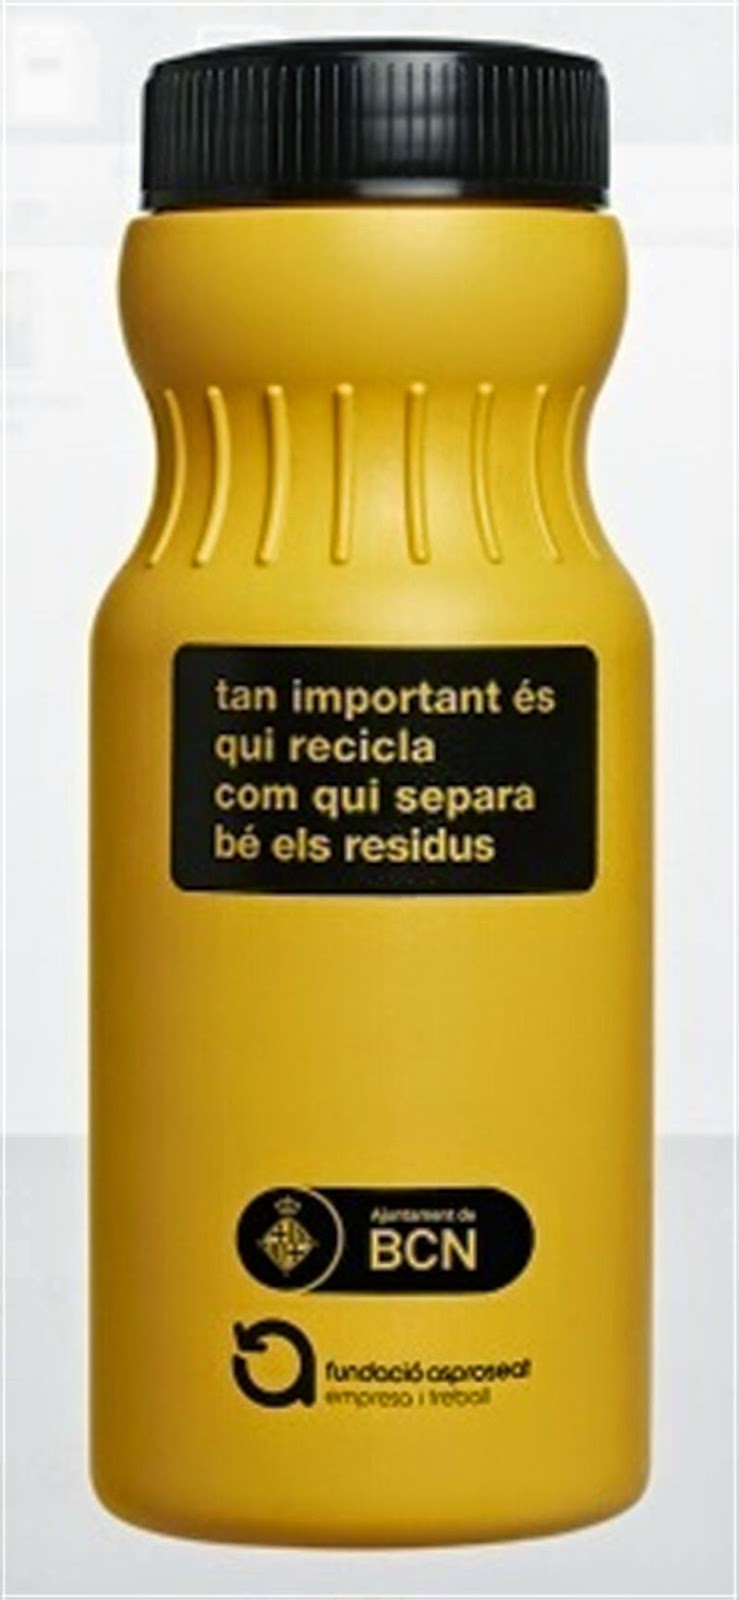 Envases retornables en Barcelona para facilitar la recogida de aceite de cocina Bernature